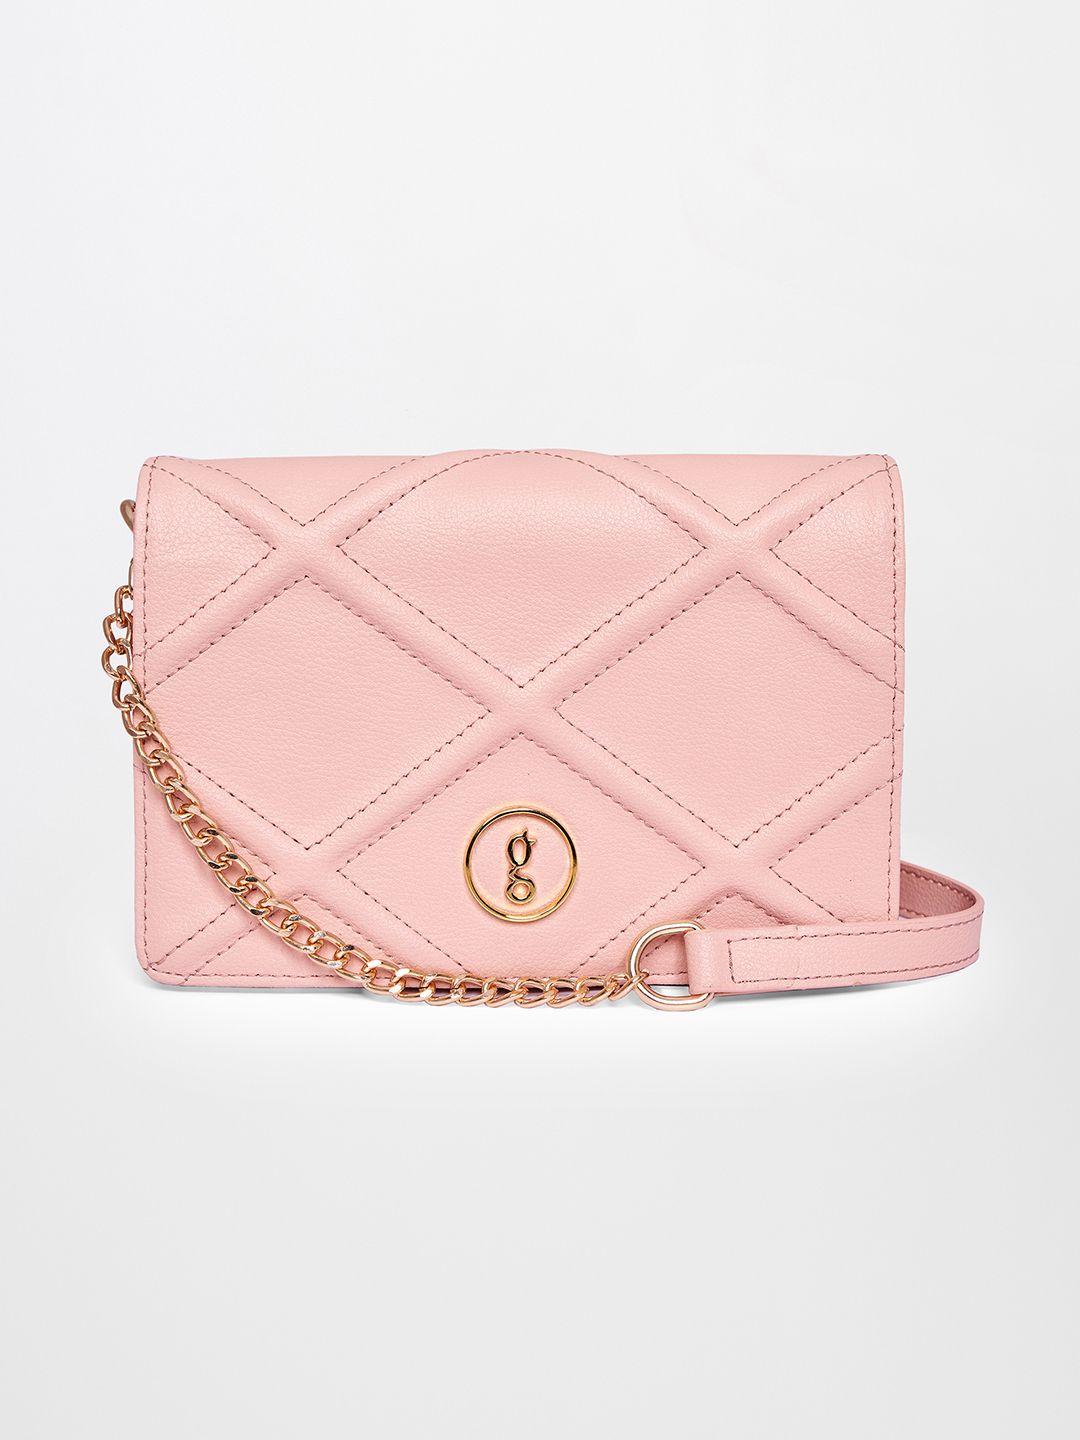 global desi pink textured structured sling bag